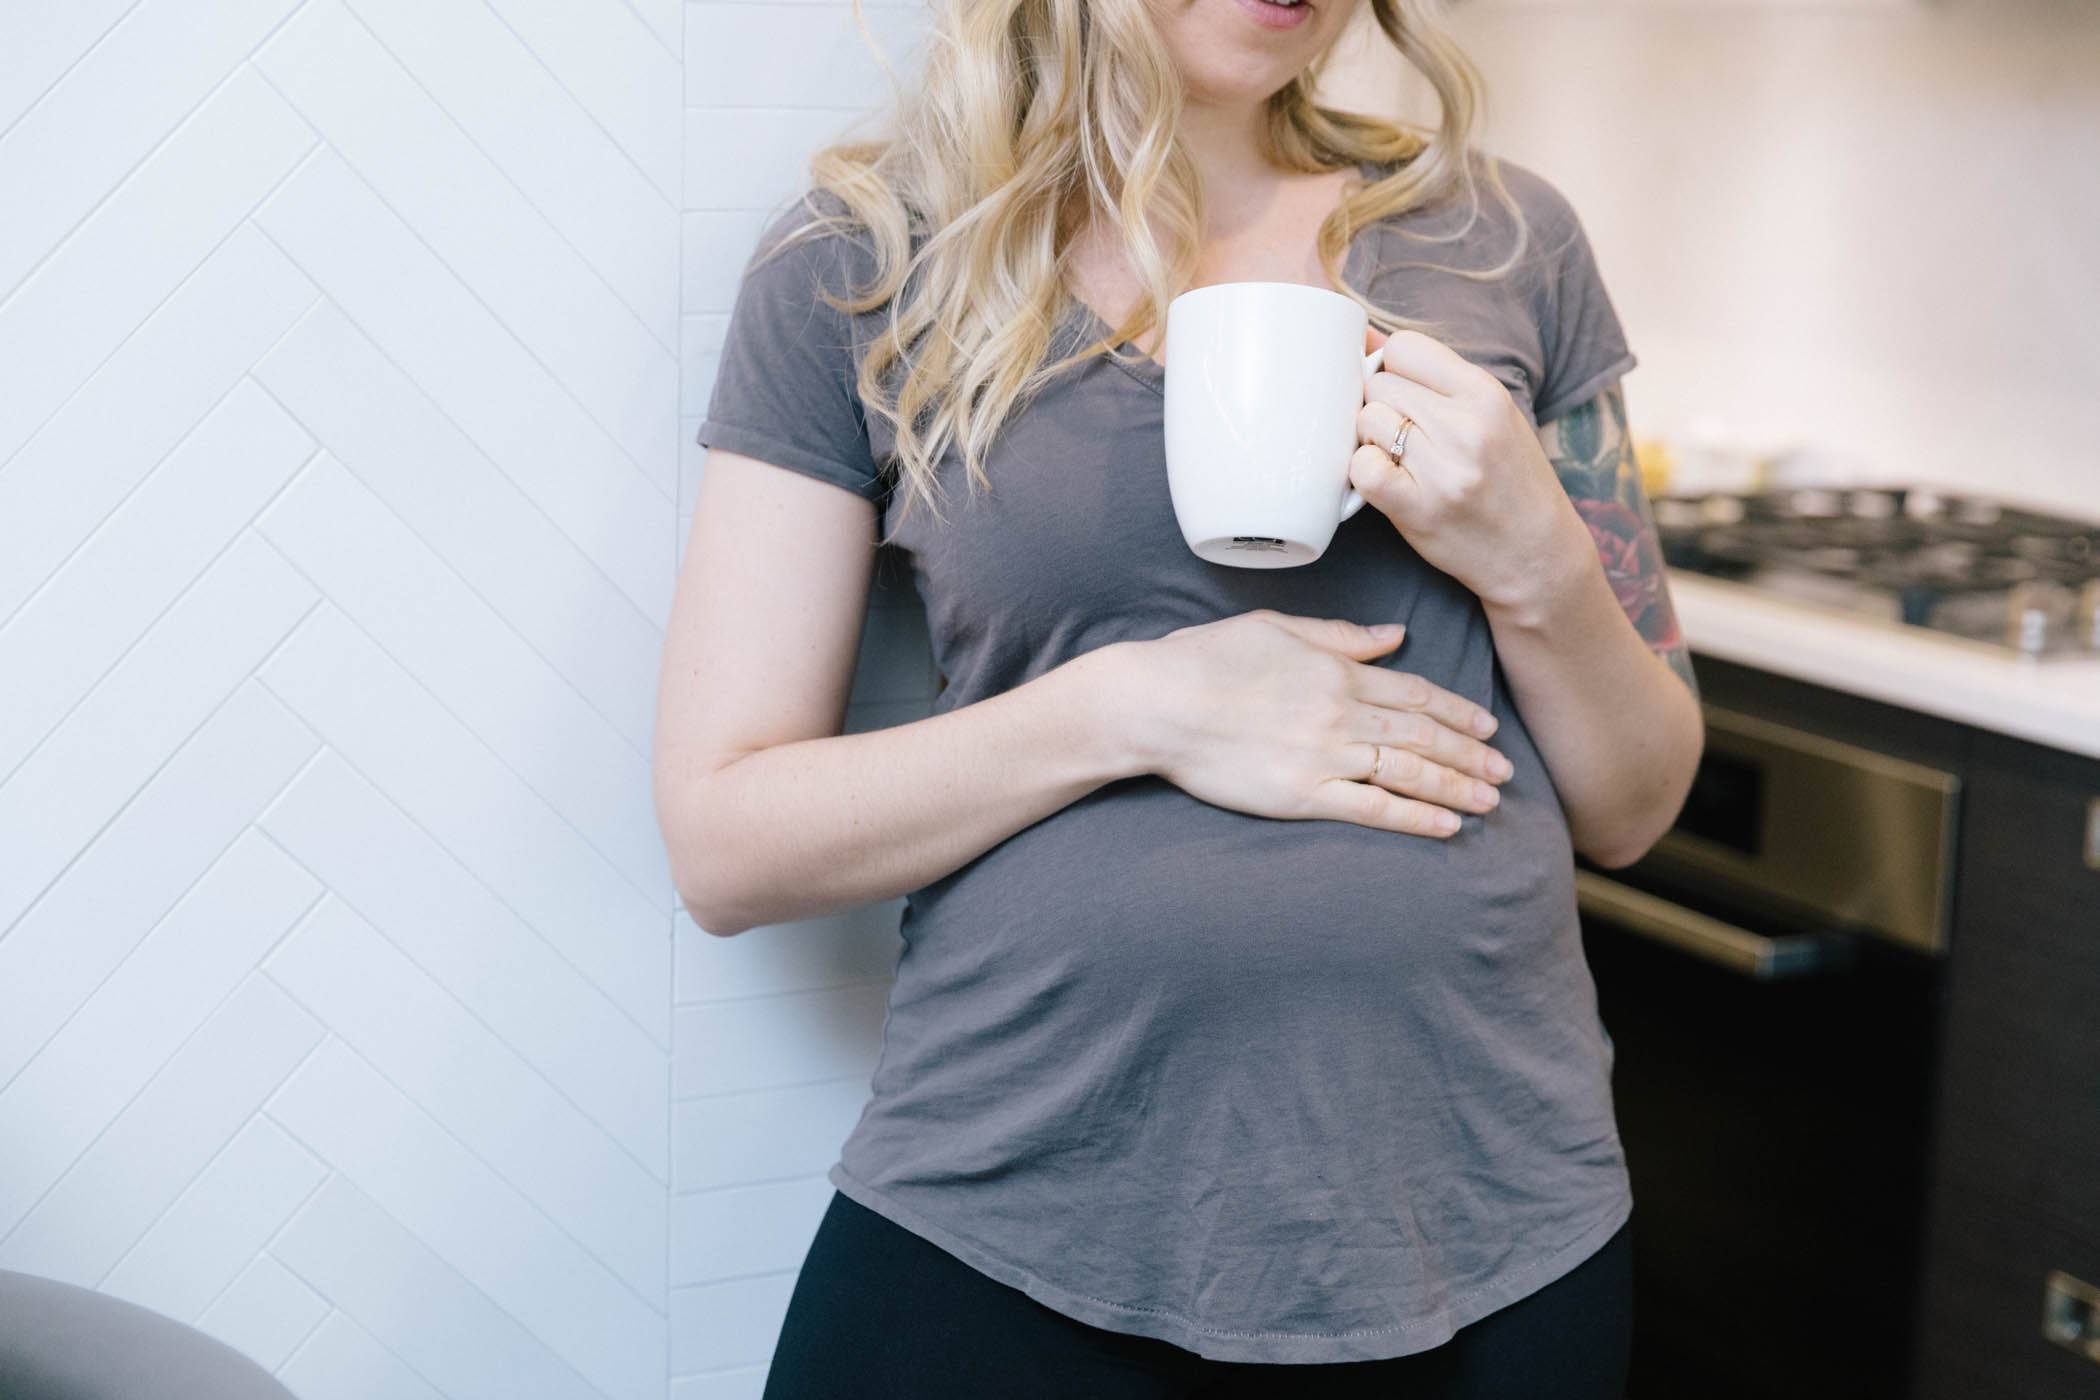 Можно ли пить кофе во время беременности?